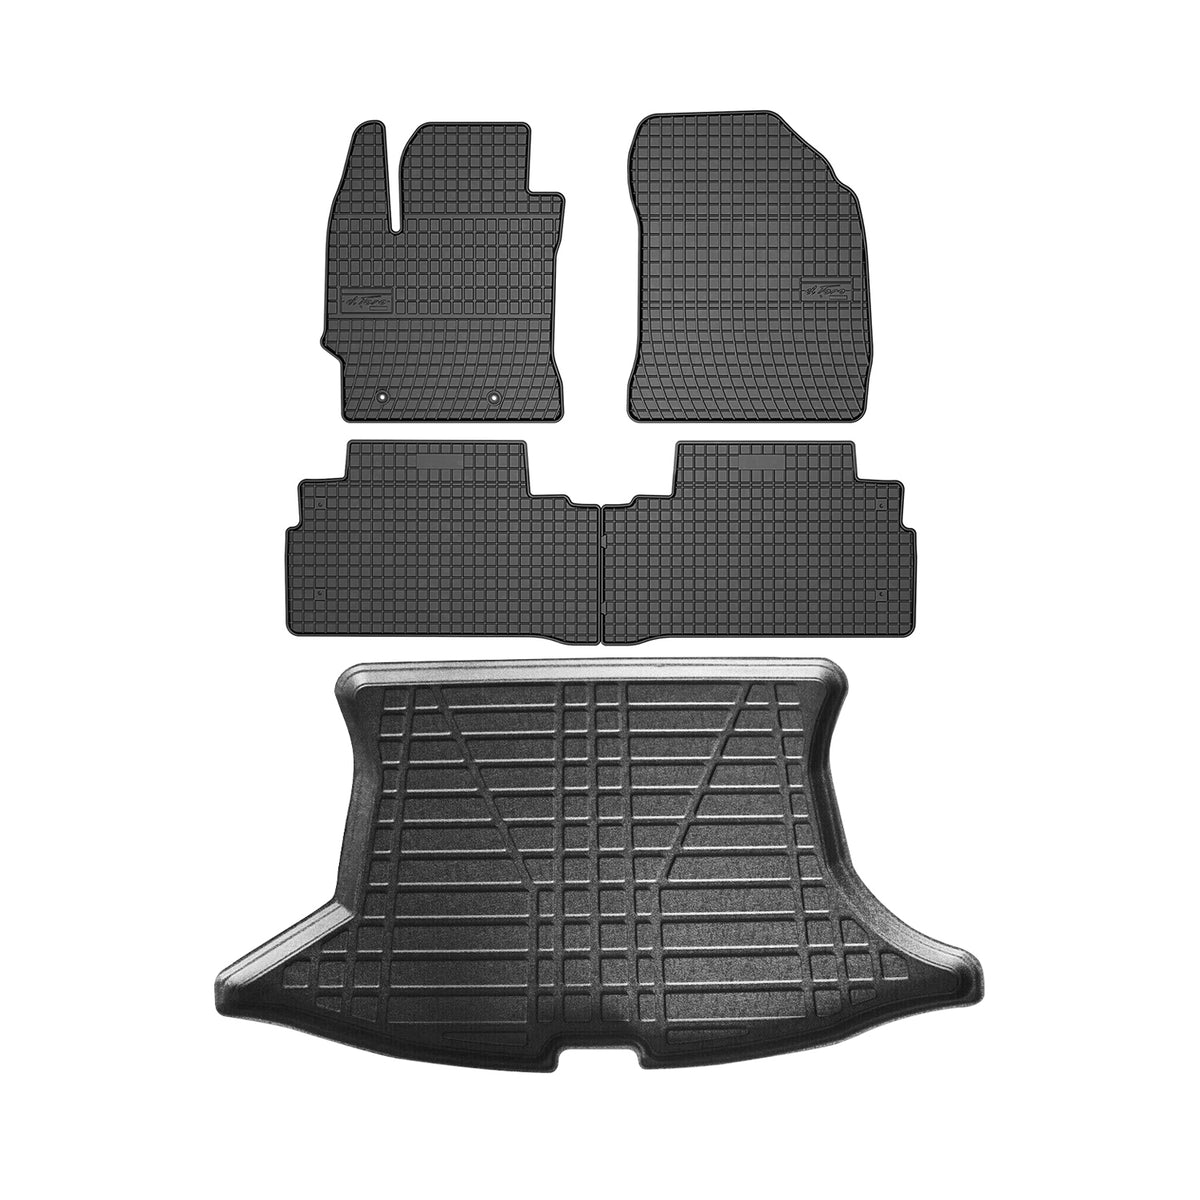 Fußmatten & Kofferraumwanne Set für Toyota Verso AR20 2009-2018 Gummi Schwarz 5x